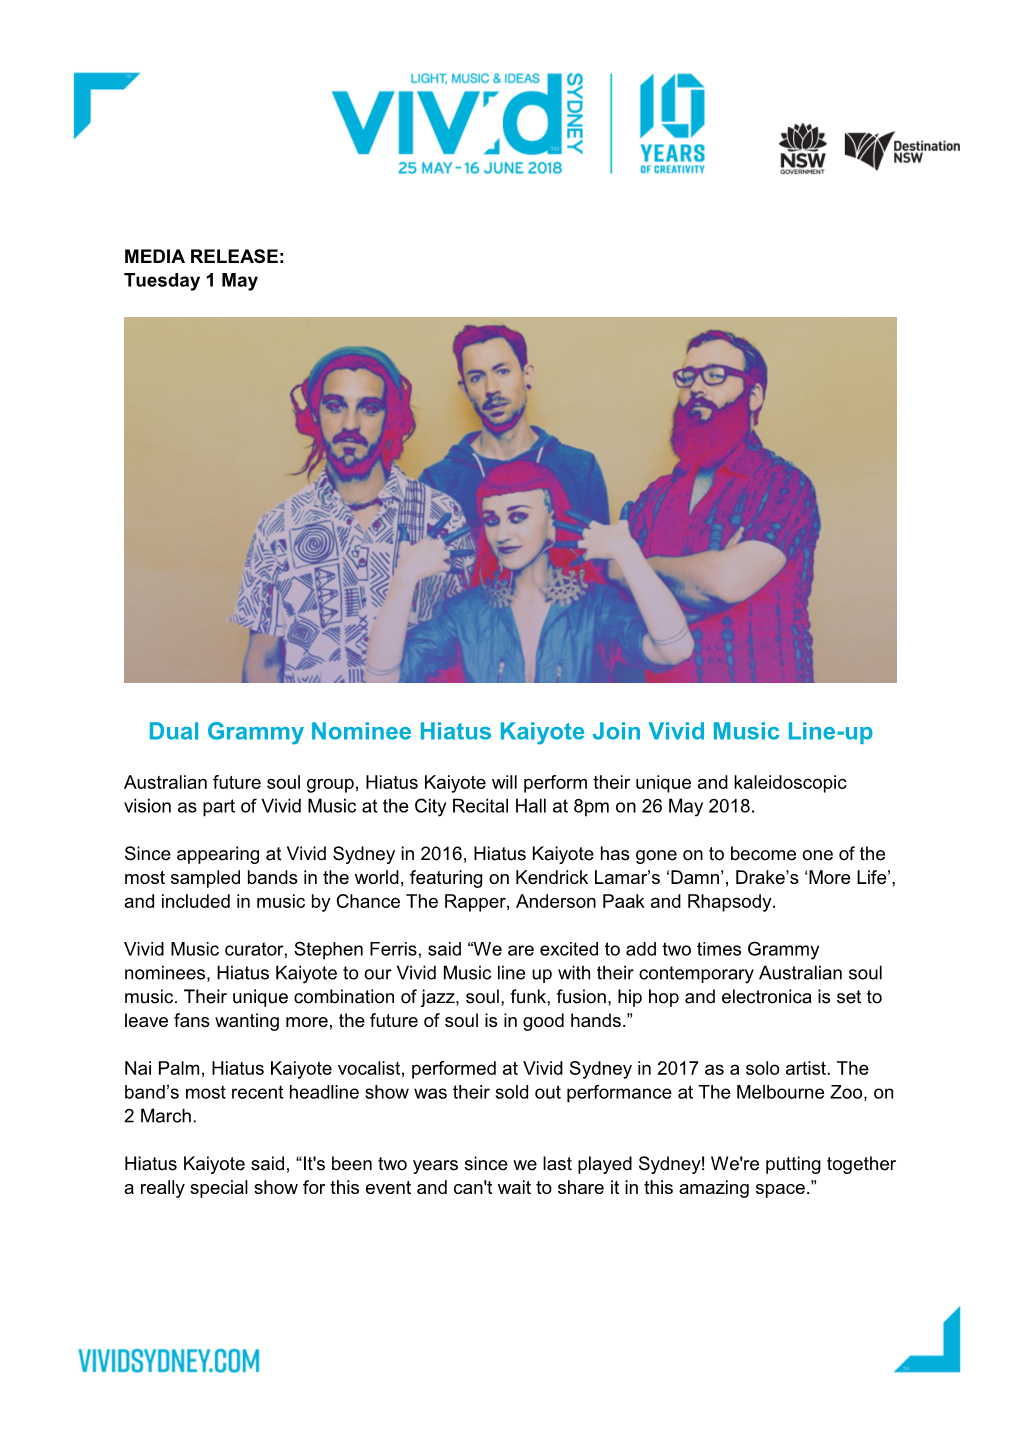 Dual Grammy Nominee Hiatus Kaiyote Join Vivid Music Line-Up